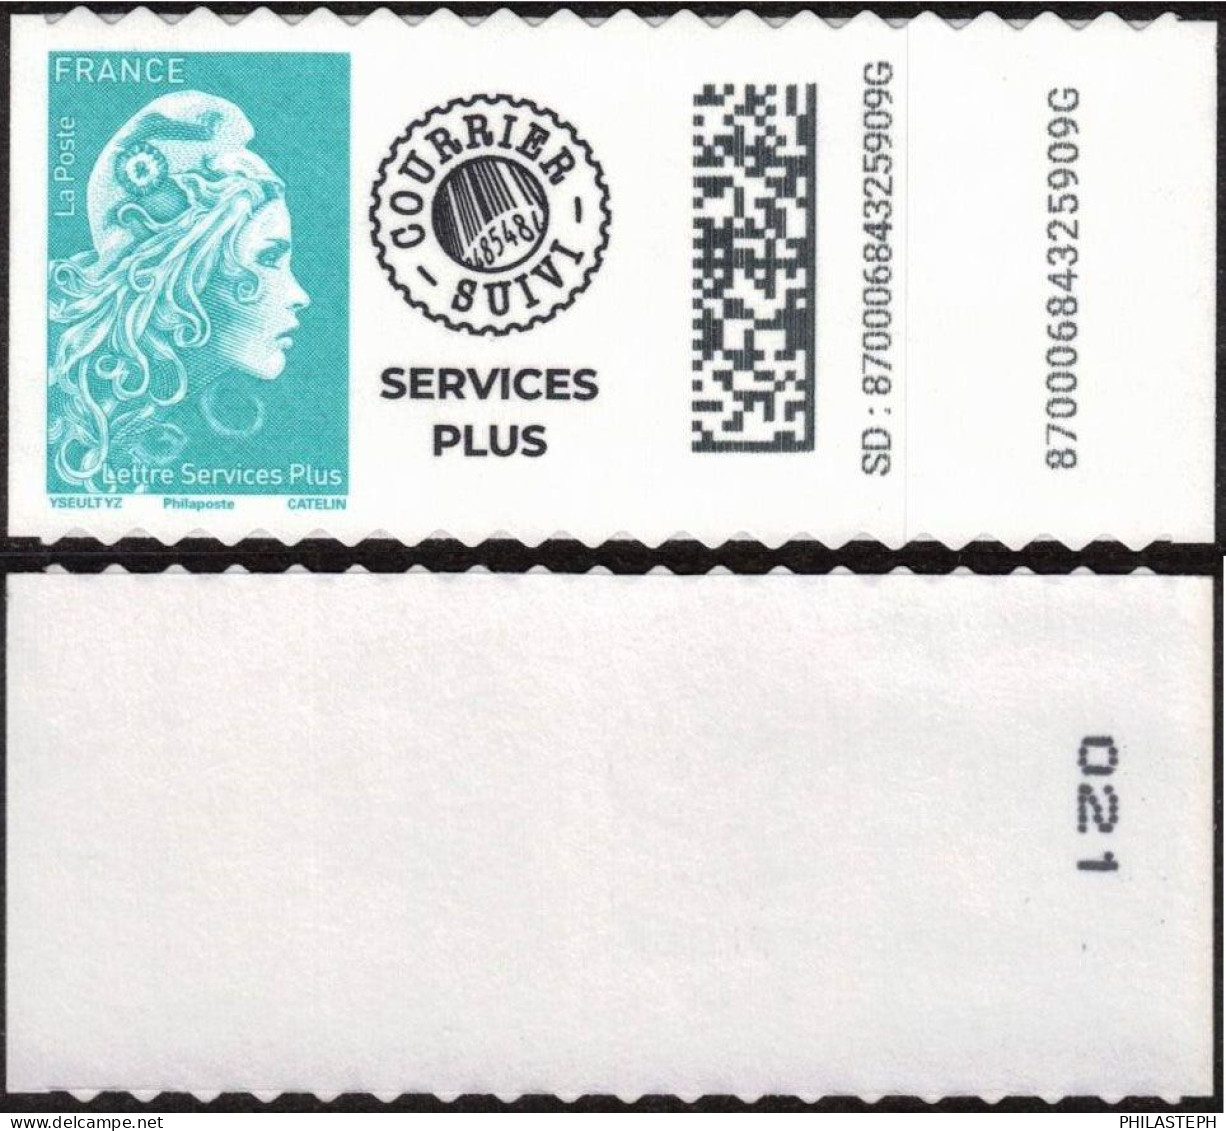 FRANCE 2023 - Marianne L'Engagée Adhésif - LETTRE SERVICES PLUS  Issu De ROULETTE De 300  - YT 2227 Neuf - Unused Stamps